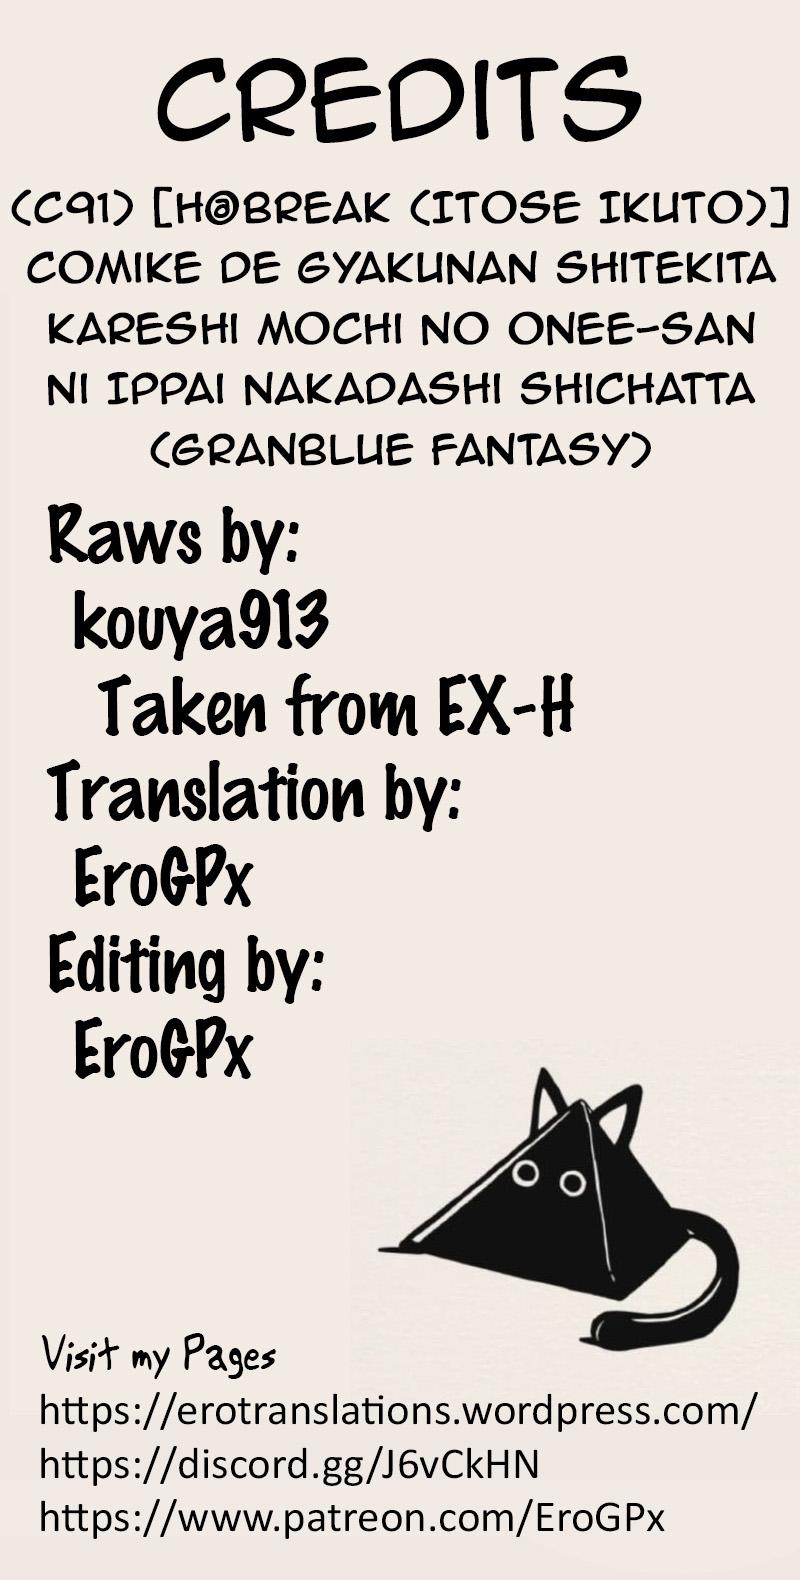 Staxxx Comike de Gyakunan Shitekita Kareshi Mochi no Onee-san ni Ippai Nakadashi Shichatta - Granblue fantasy Onlyfans - Page 25